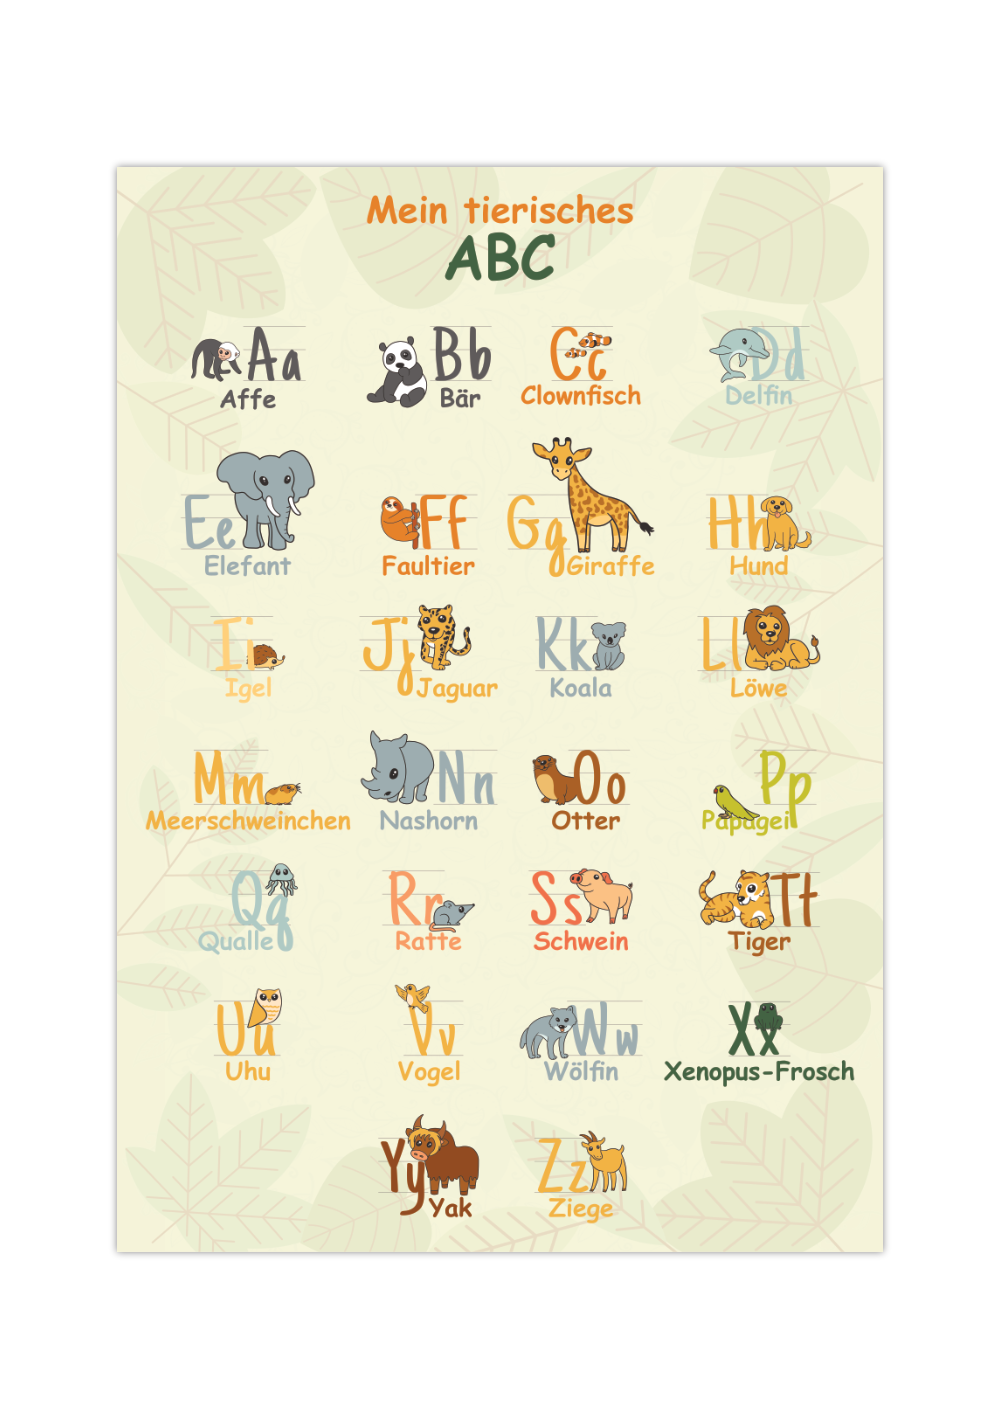 Dieses ABC Poster zeigt dir die Buchstaben von A bis Z und dazu Tiere, die zu dem jeweiligen Buchstaben passen, mit Groß- und Kleinschreibung.